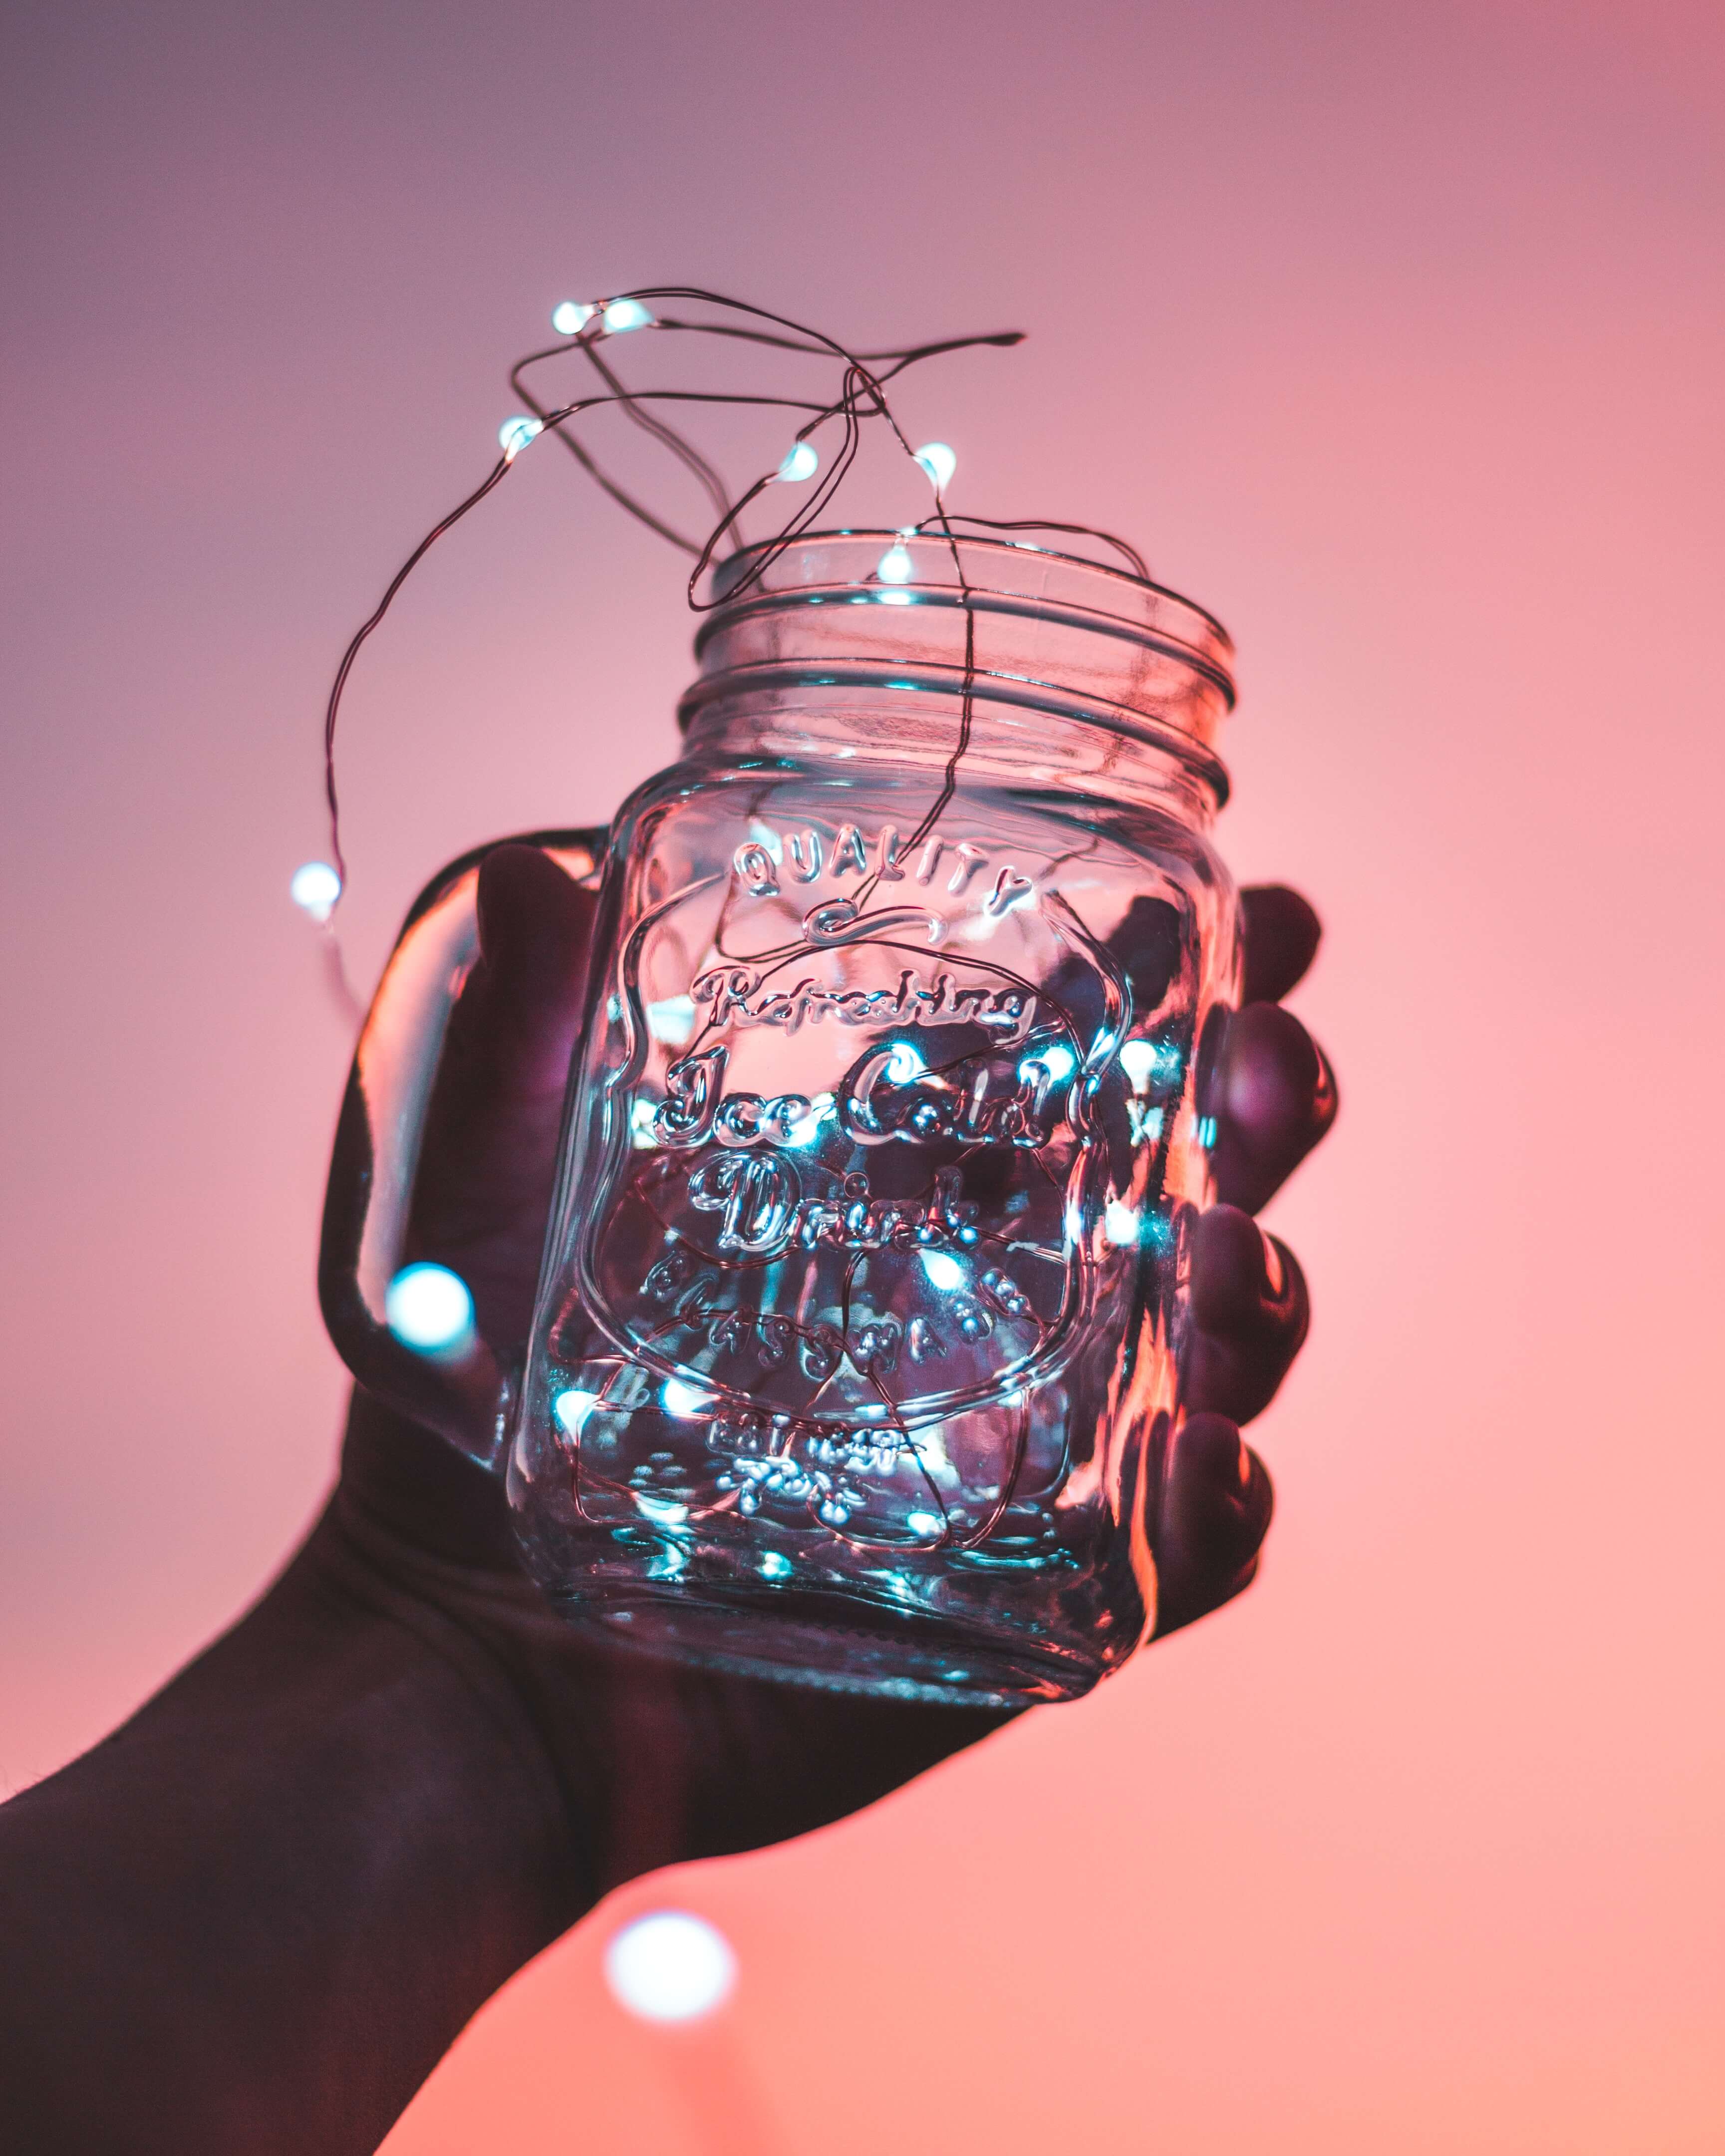 A mason jar full of string lights